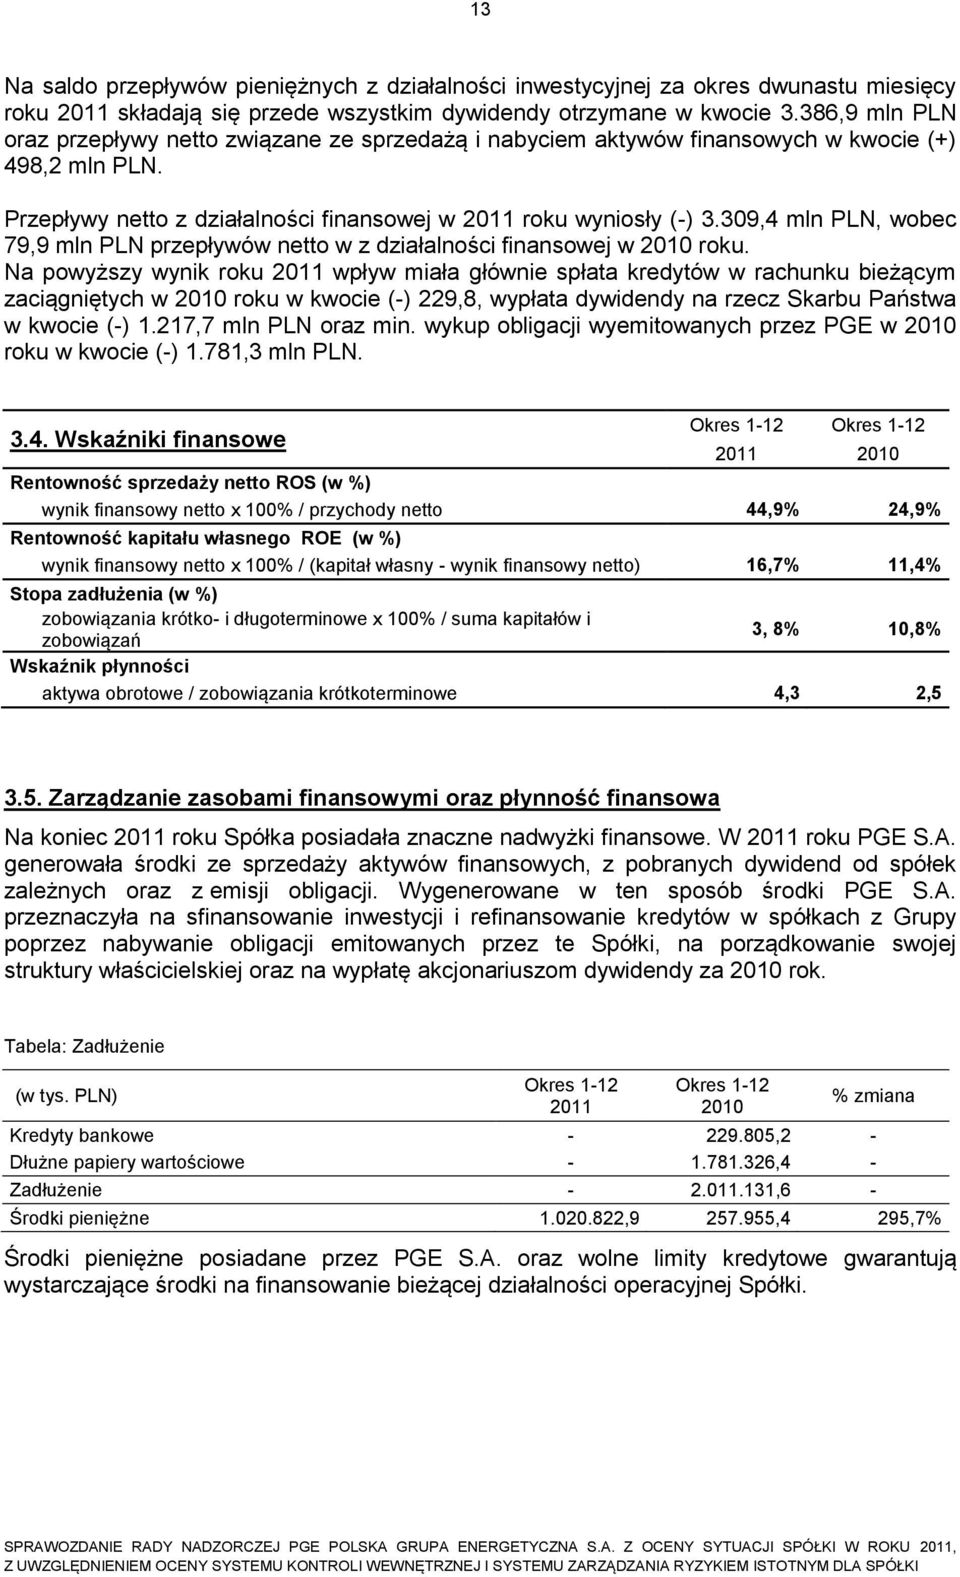 309,4 mln PLN, wobec 79,9 mln PLN przepływów netto w z działalności finansowej w 2010 roku.